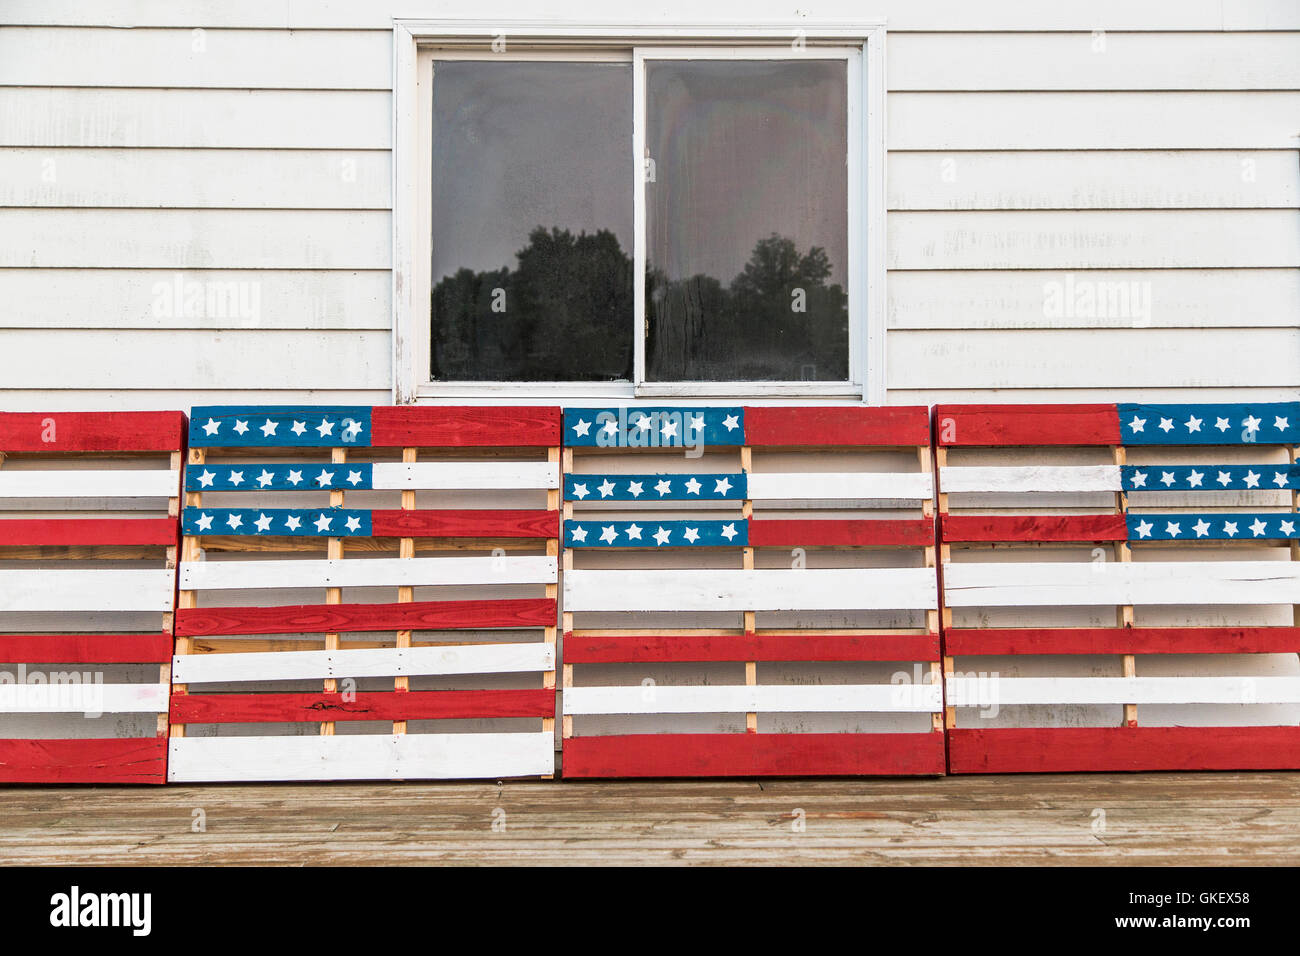 Eine patriotische Darstellung von Holzpaletten in amerikanische Flagge Motive in rot, weiß und blau lackiert. Stockfoto